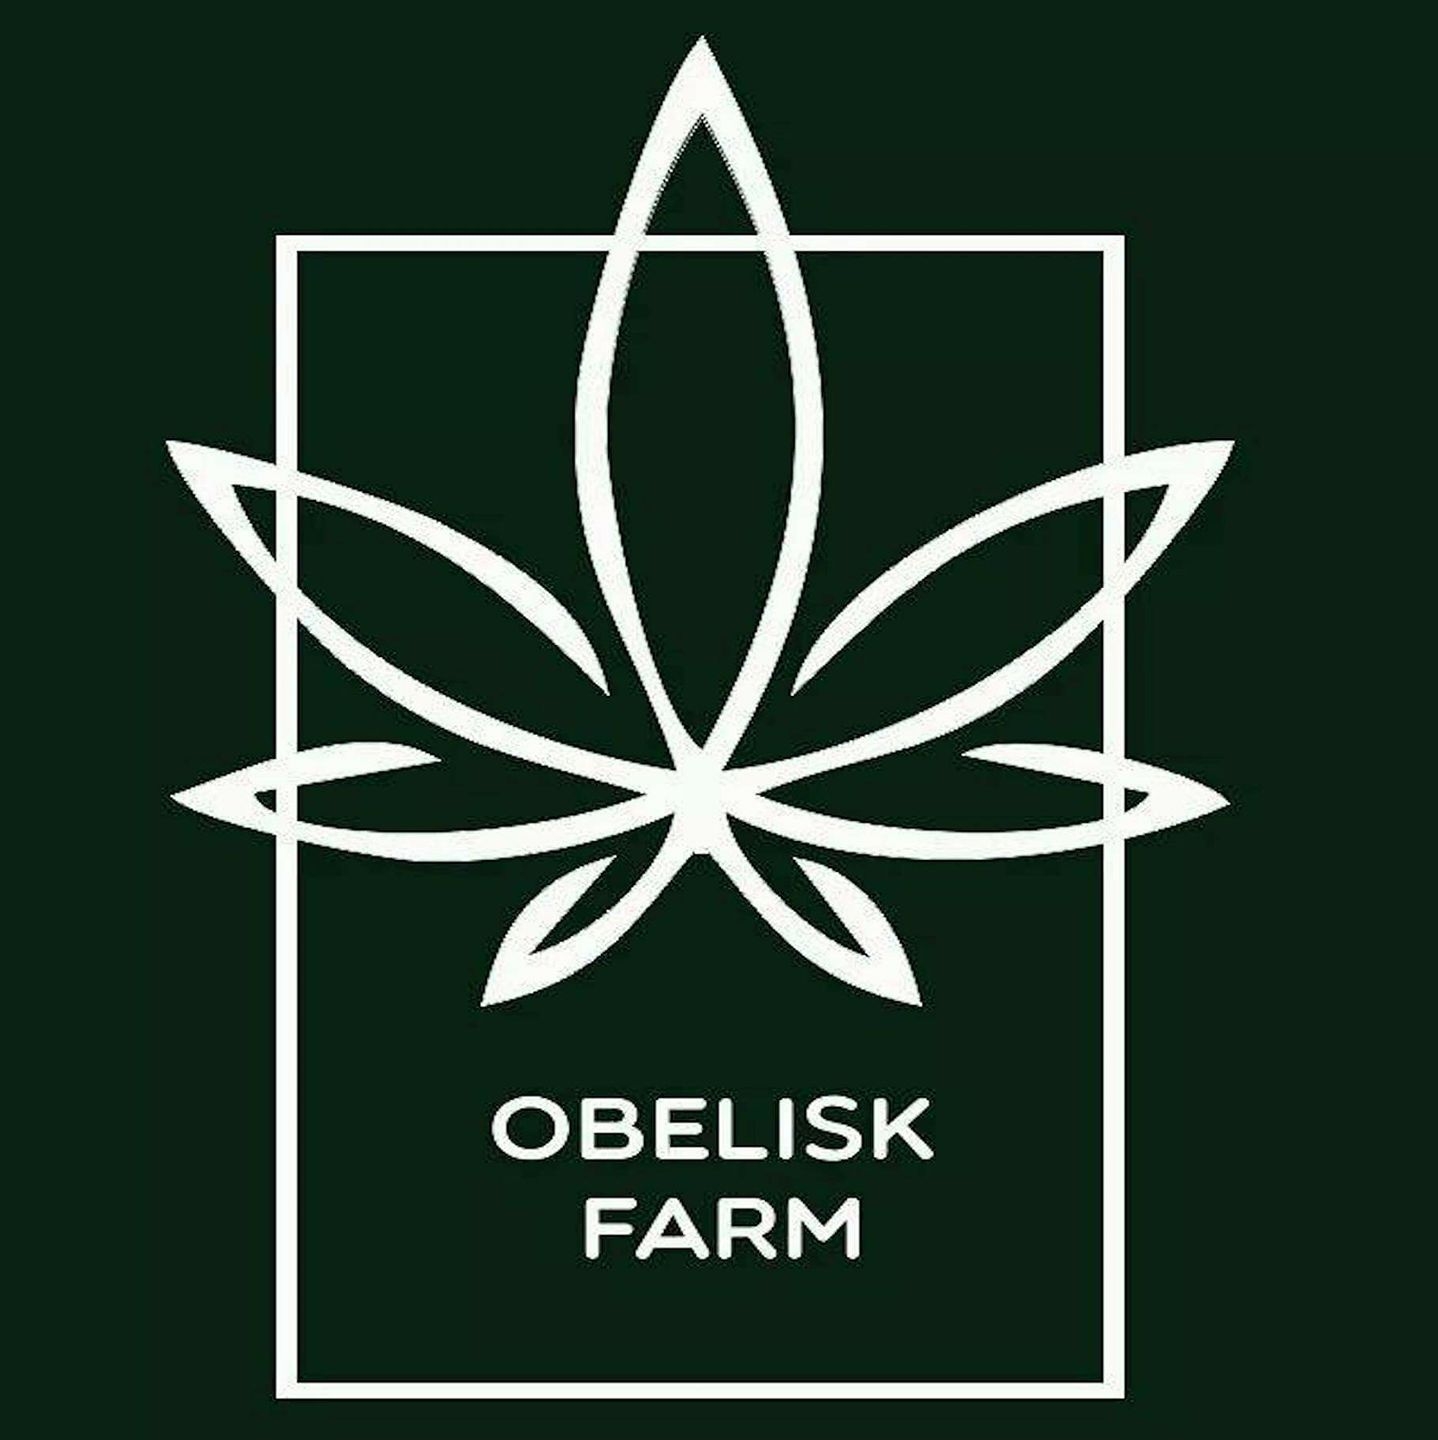 Obelisk Farm